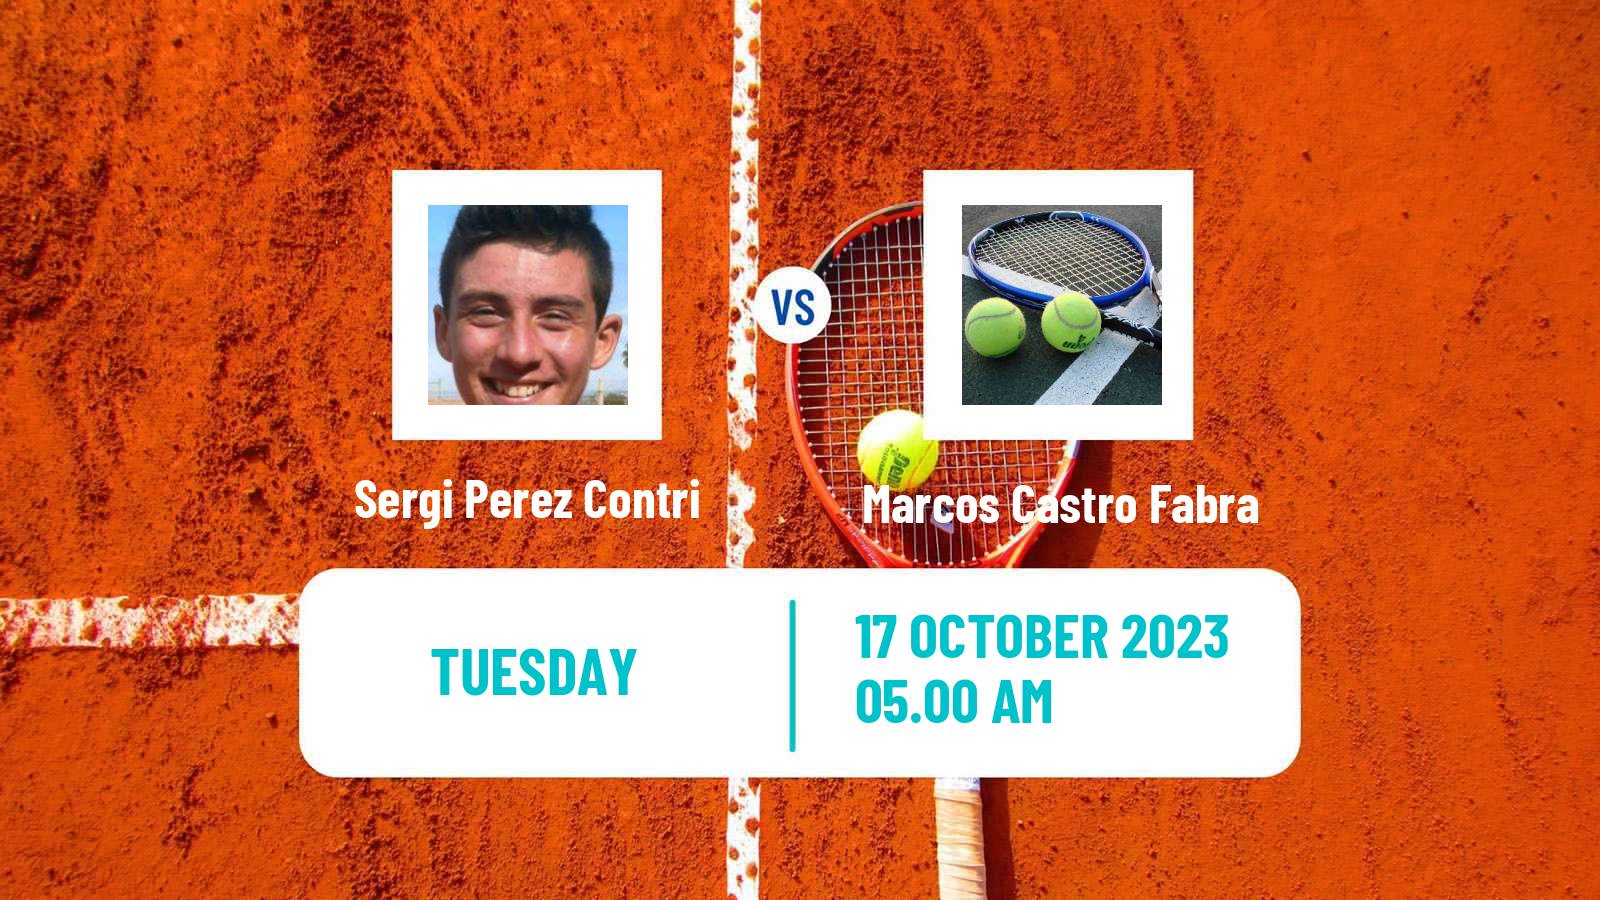 Tennis ITF M15 Castellon Men Sergi Perez Contri - Marcos Castro Fabra